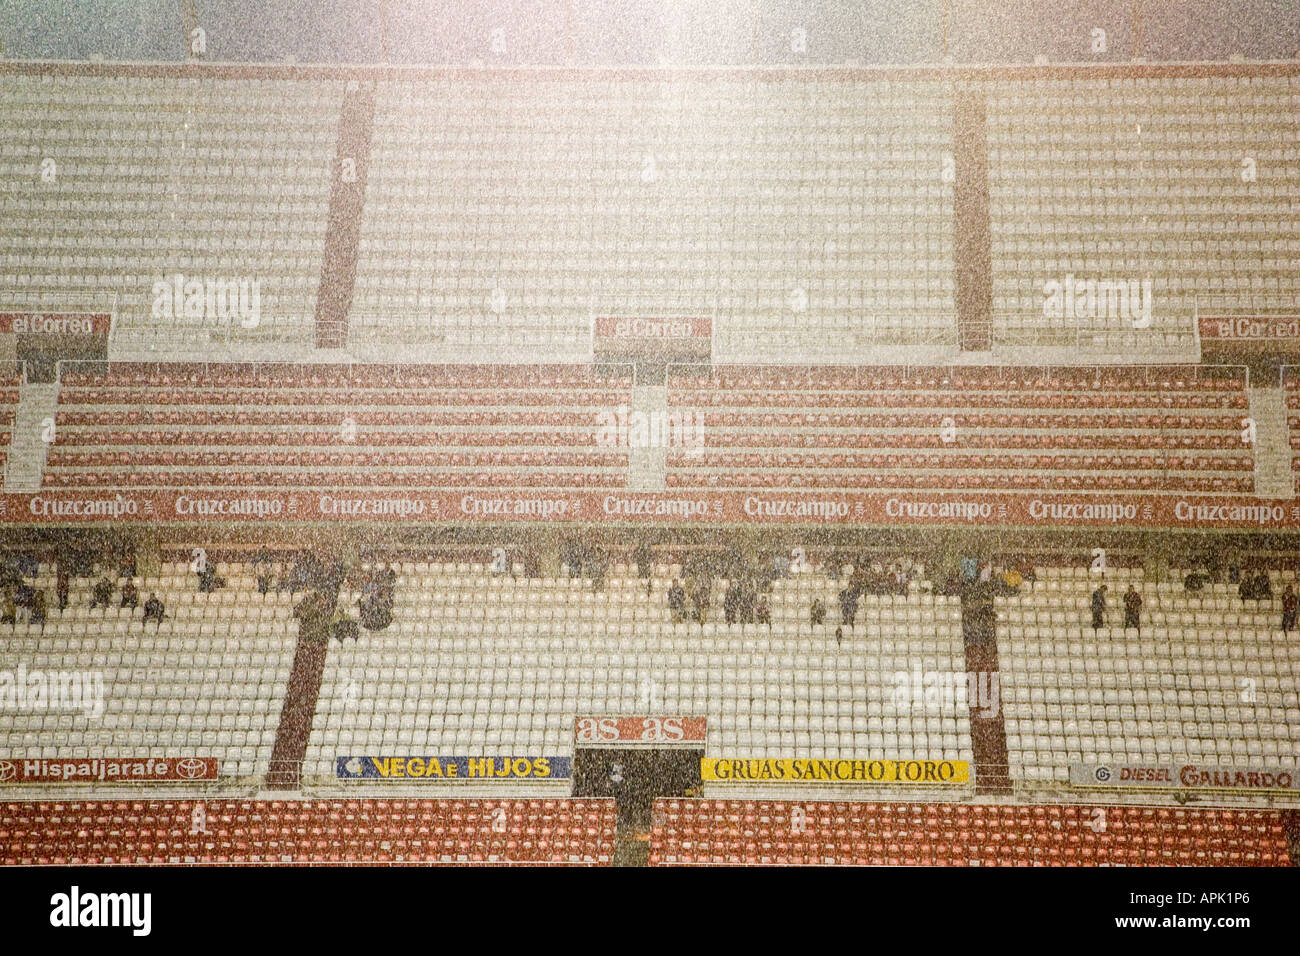 Blick auf Sanchez Pizjuan Stadion, FC Sevilla unter einem starken Regenguss angehören Stockfoto